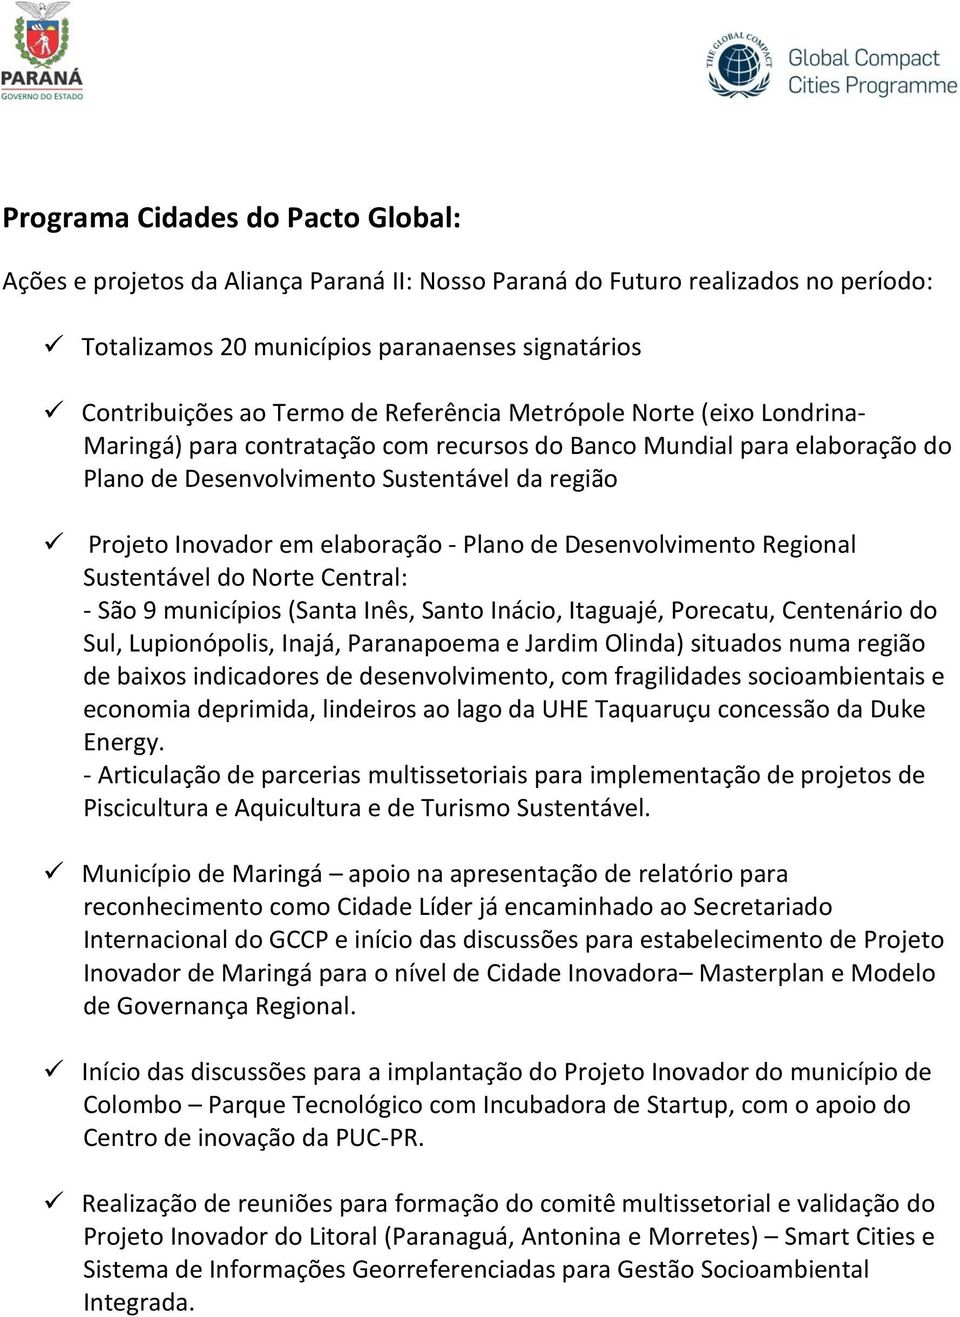 Plano de Desenvolvimento Regional Sustentável do Norte Central: - São 9 municípios (Santa Inês, Santo Inácio, Itaguajé, Porecatu, Centenário do Sul, Lupionópolis, Inajá, Paranapoema e Jardim Olinda)